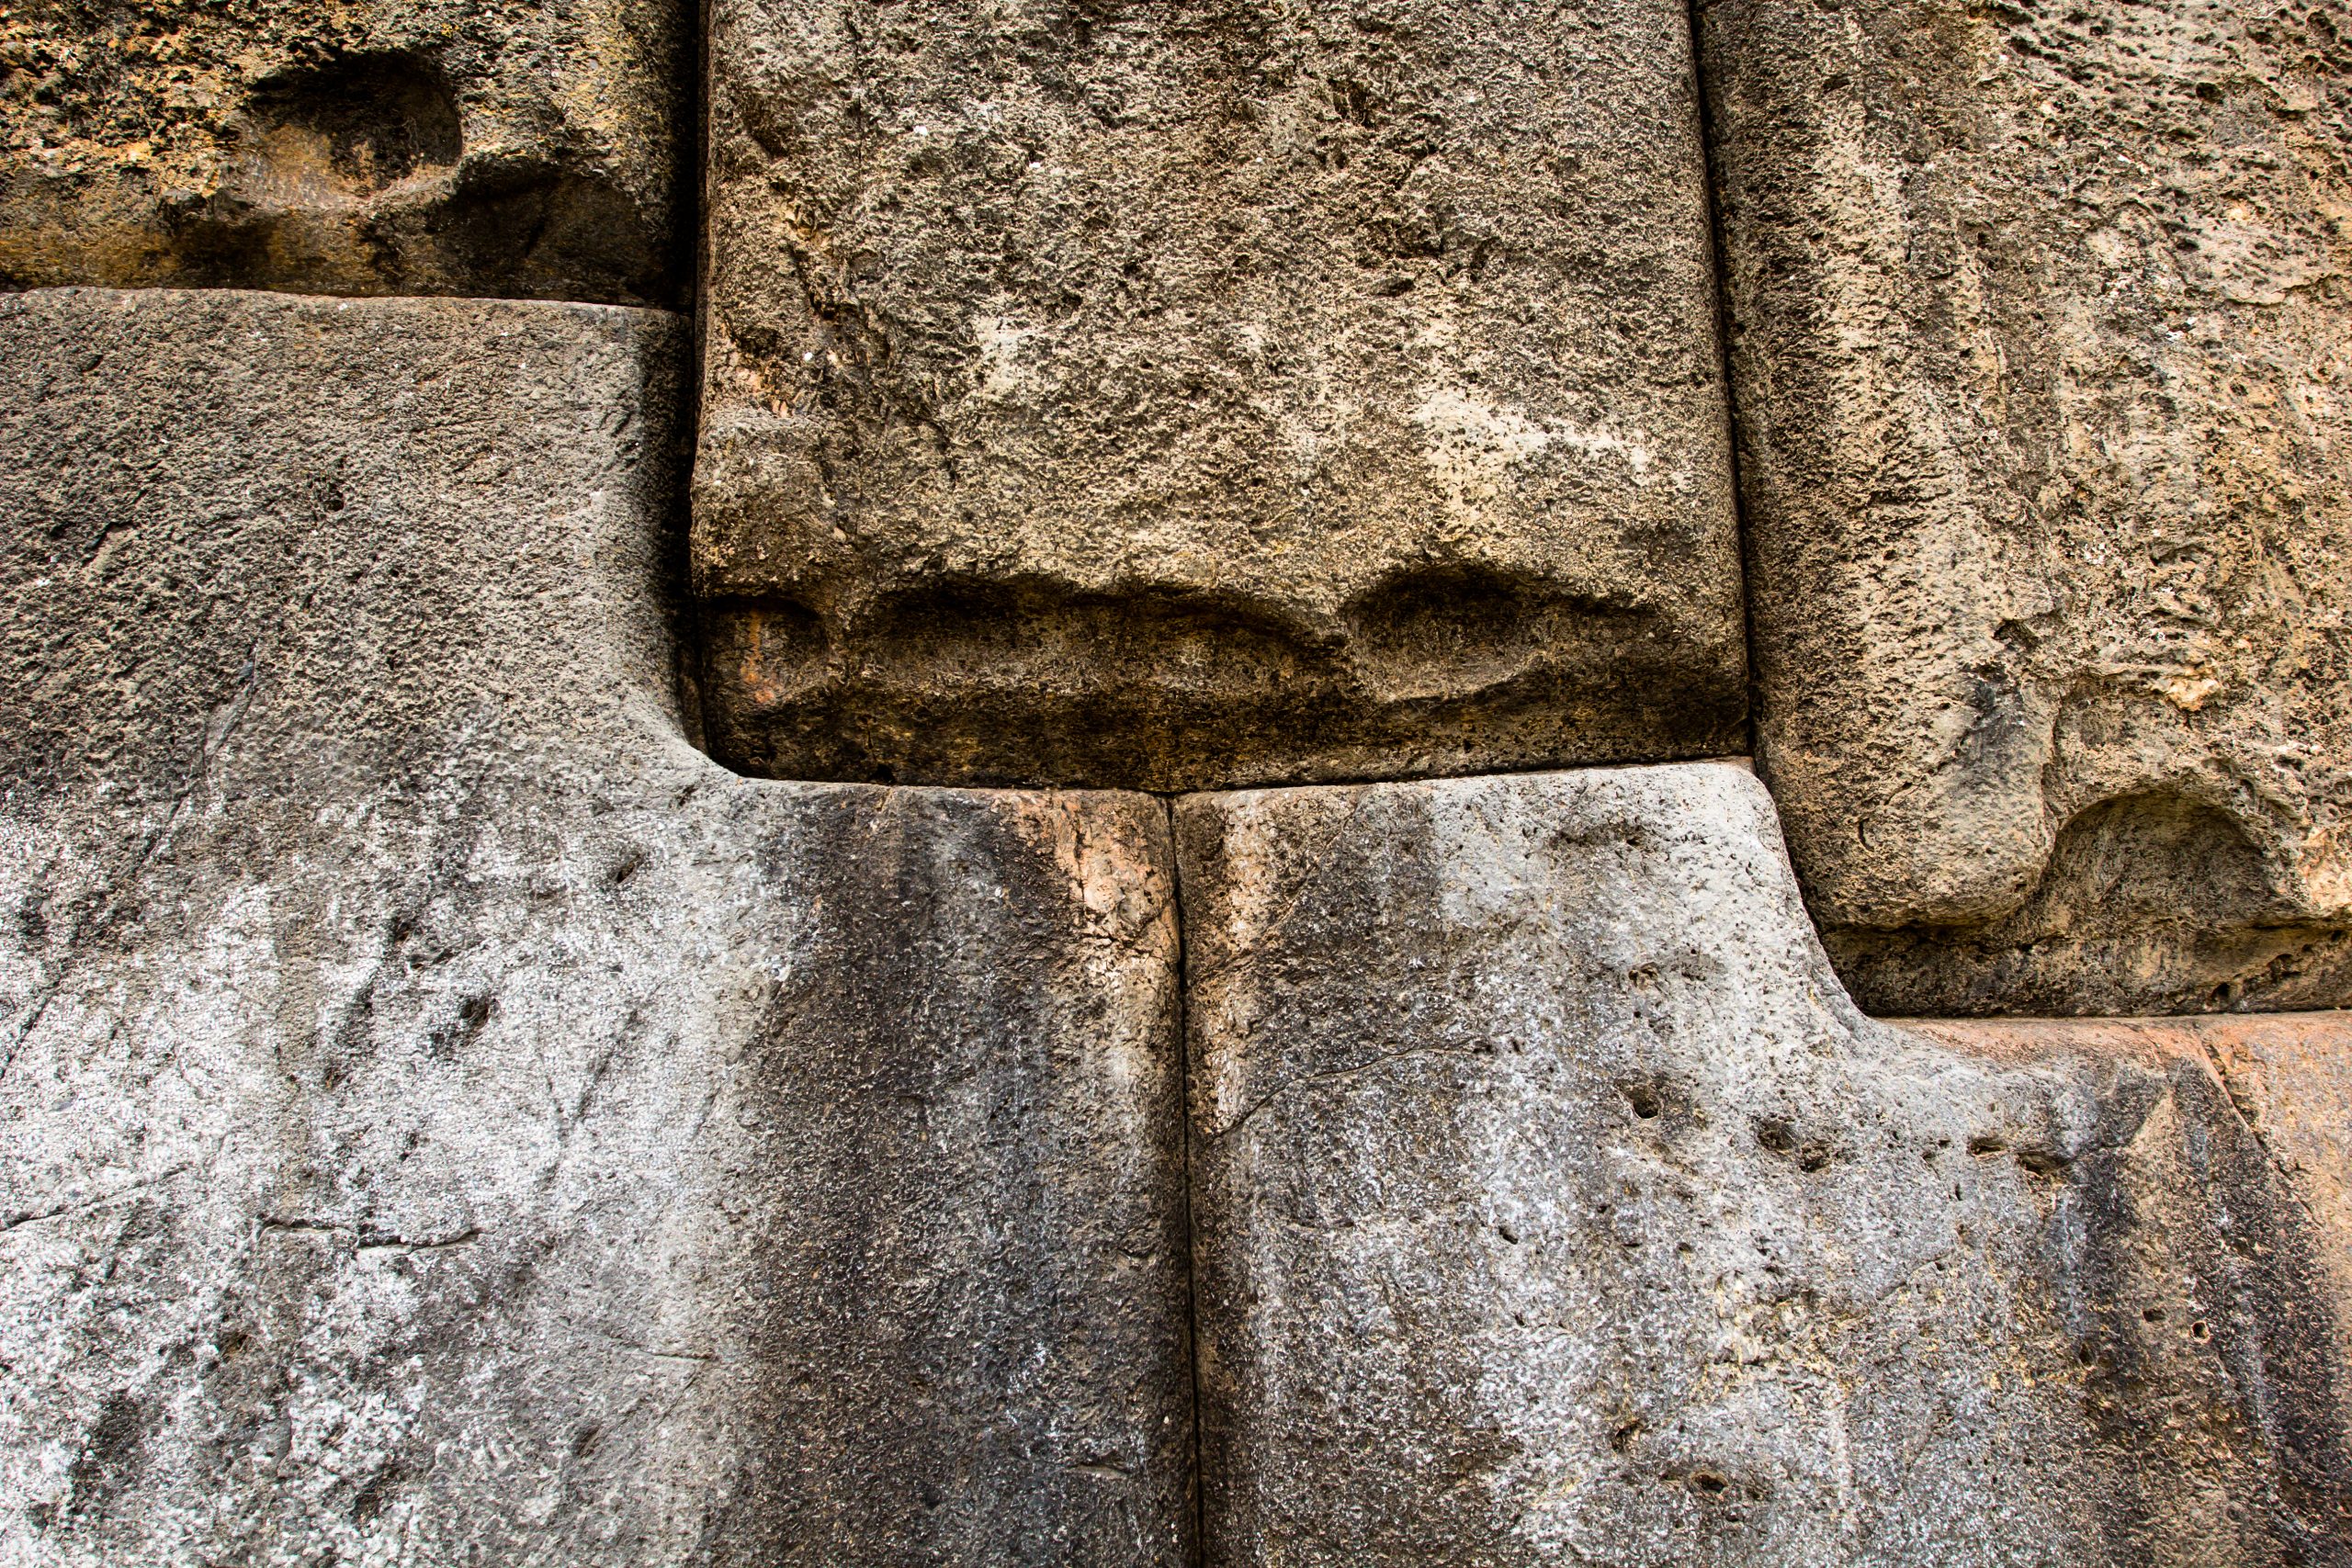 Stone walls at Sacsayhuaman. Yayimages.